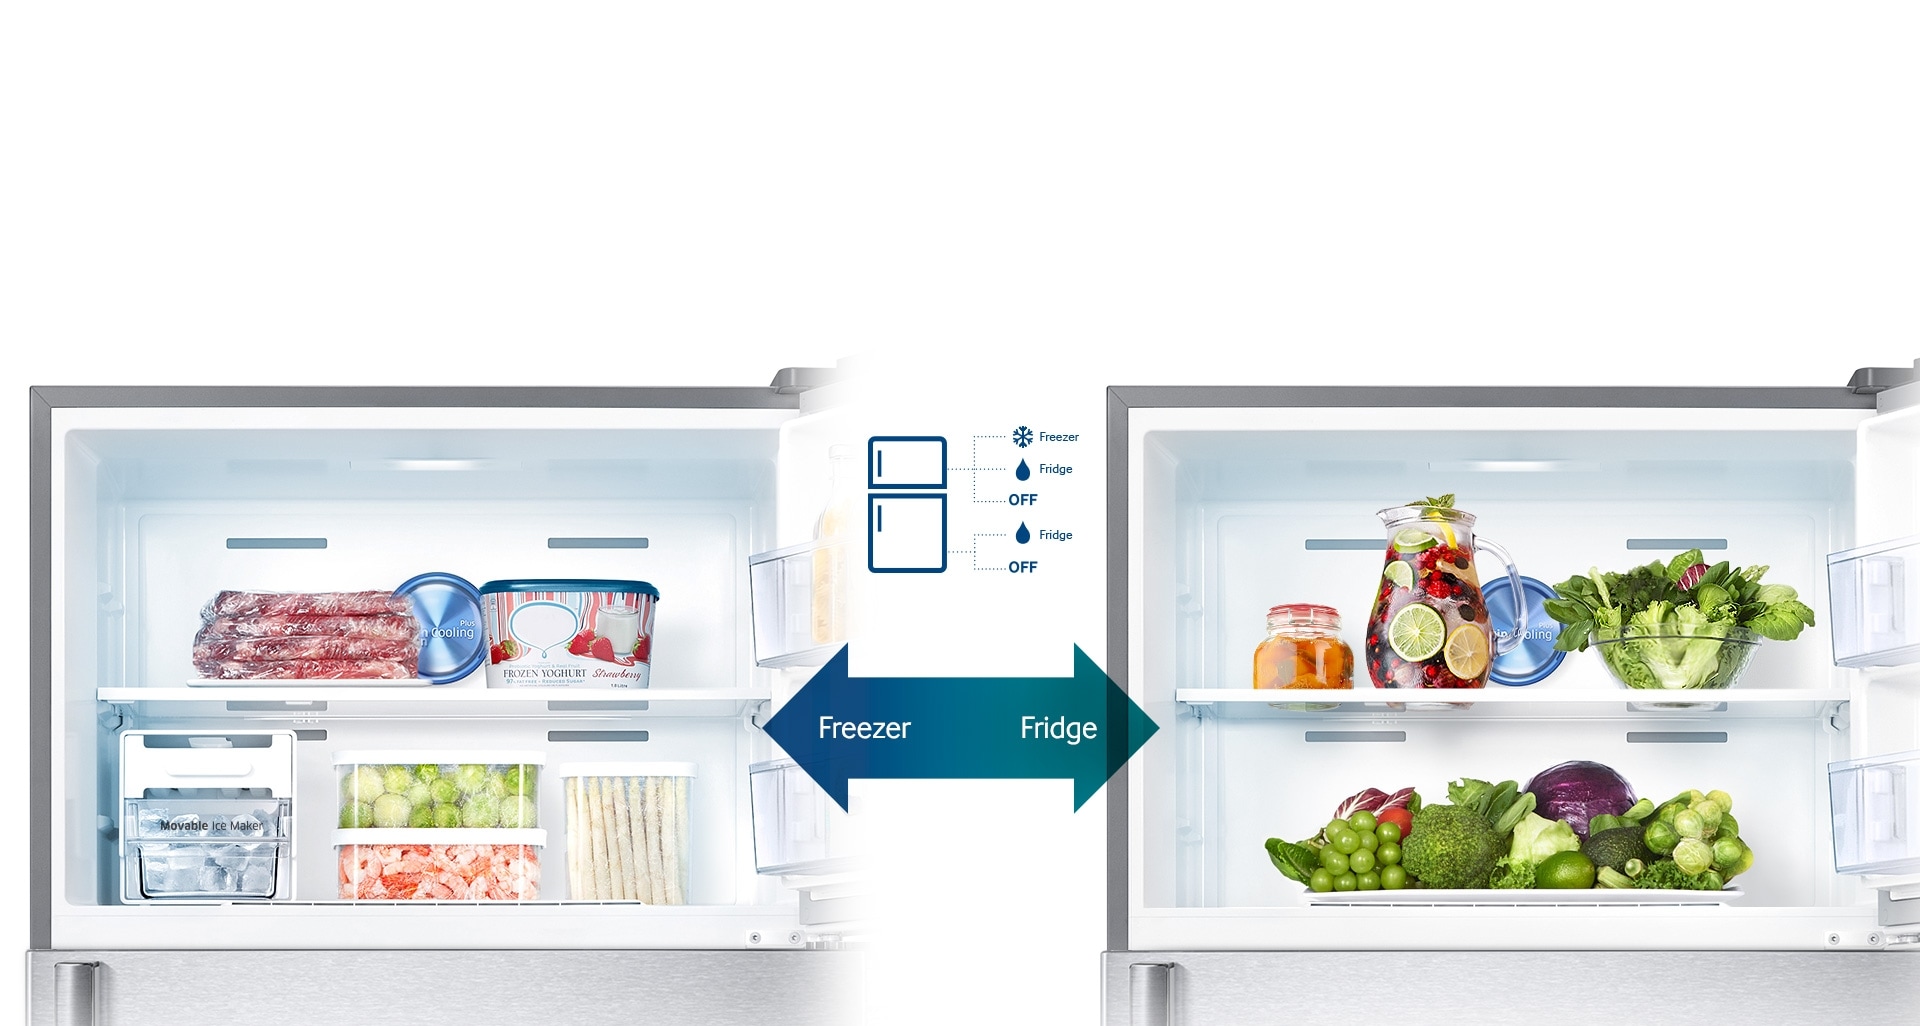 Ce réfrigérateur offre ce qui se fait de mieux en matière de flexibilité de stockage. Vous pouvez facilement transformer votre congélateur en réfrigérateur afin d’y conserver tous les aliments frais que vous devez stocker selon les saisons ou pour des occasions spéciales. Vous pouvez aussi sélectionner le mode OFF* pour économiser l’énergie.